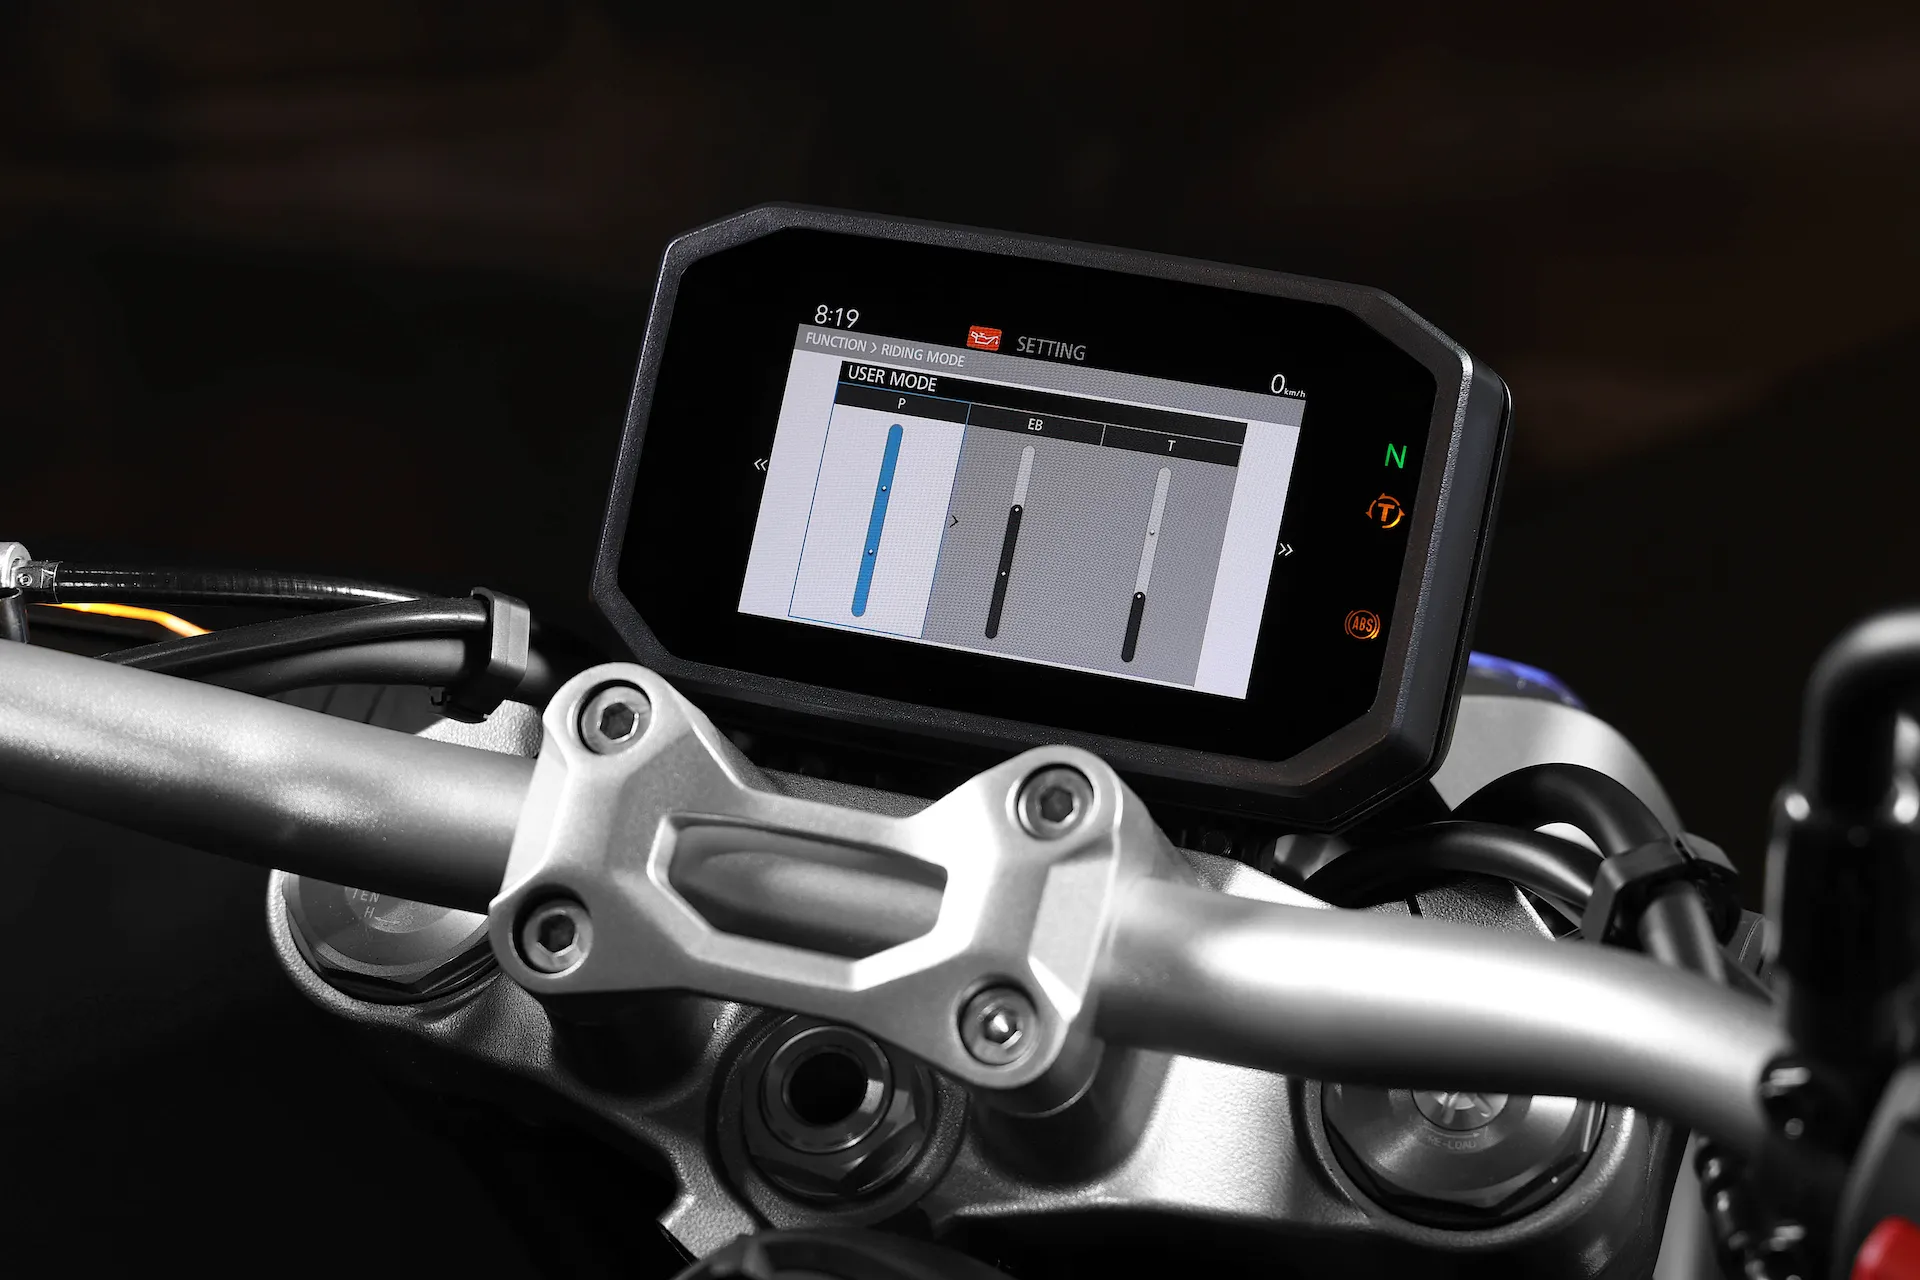 Detalhe do painel da moto Honda CB 1000R com modo de pilotagem ativado